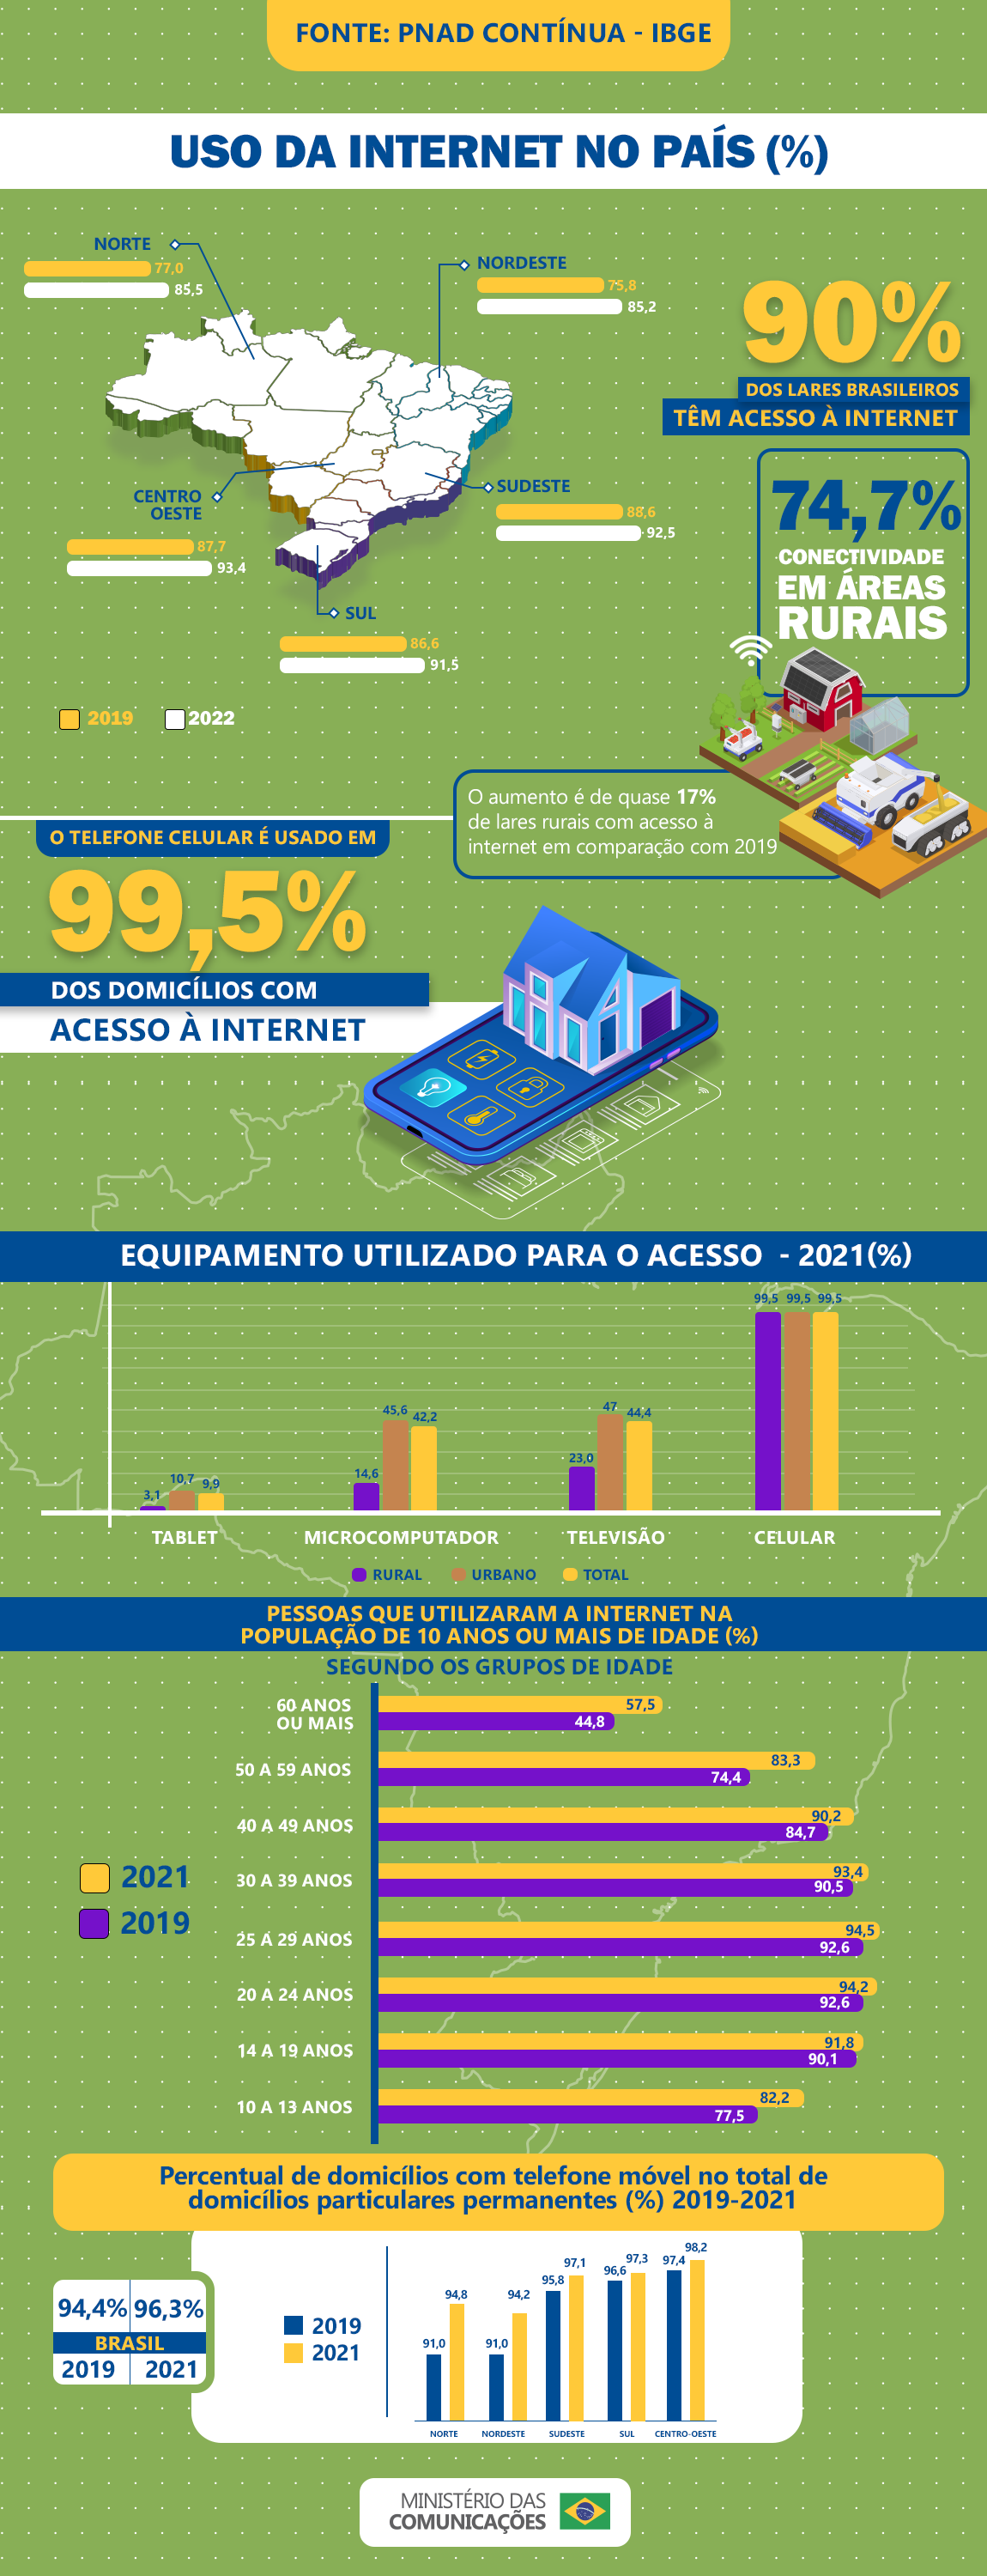 https://www.gov.br/mcom/pt-br/noticias/2022/setembro/aumenta-o-numero-de-domicilios-com-internet-no-brasil/InfograficoPNADCONTINUA2.png